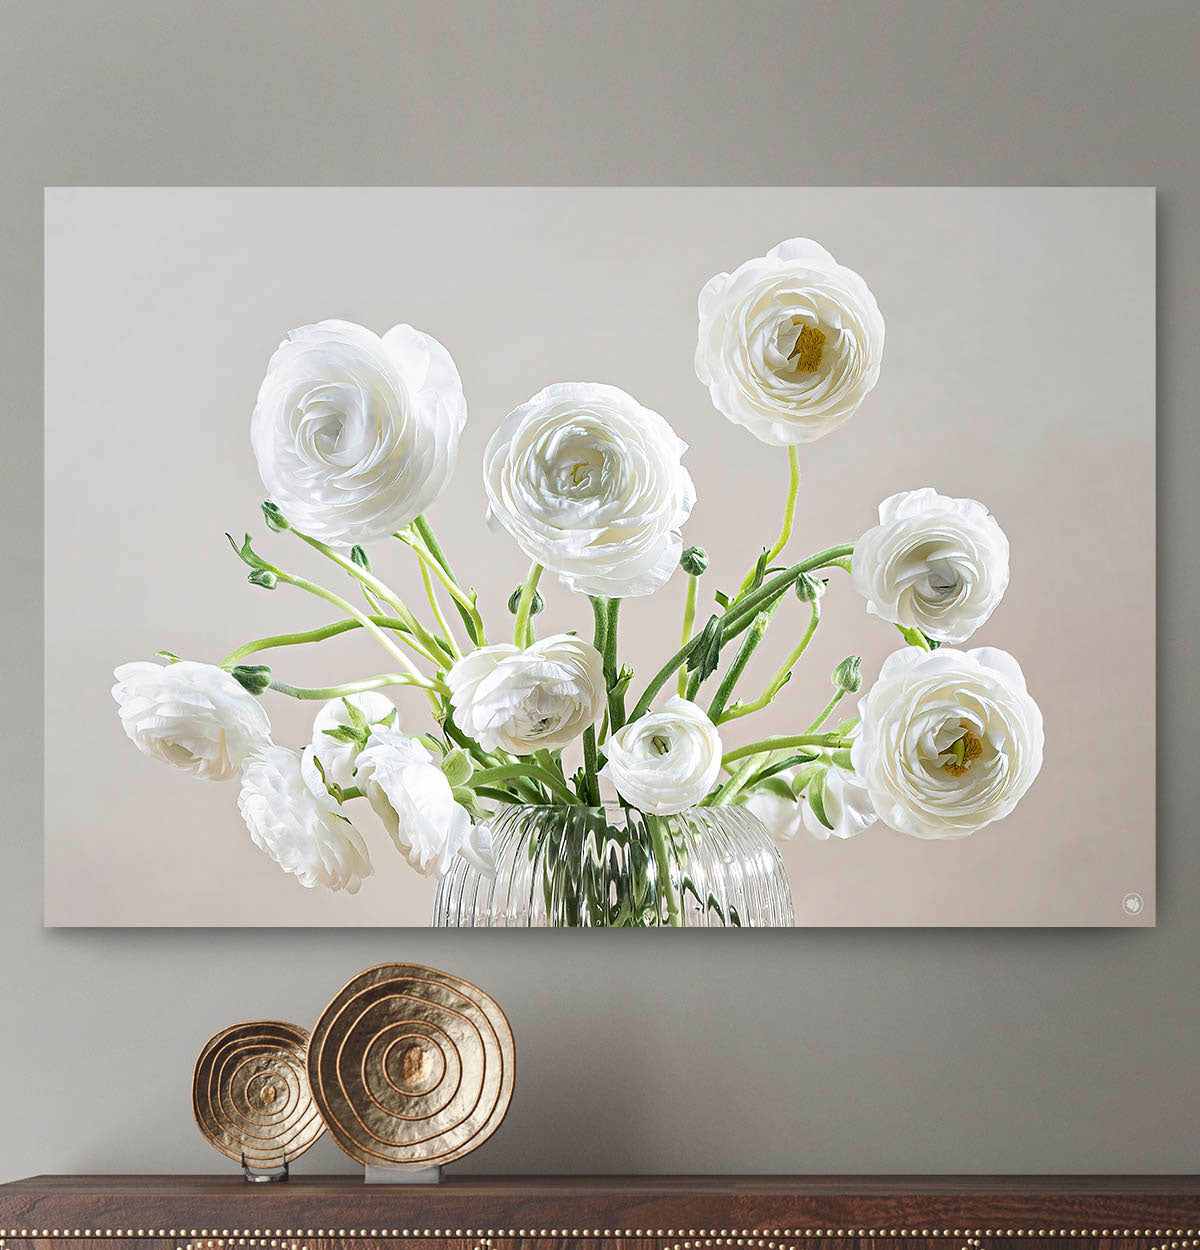 Schilderij met een glazen vaas met witte bloemen tegen een lichte muur